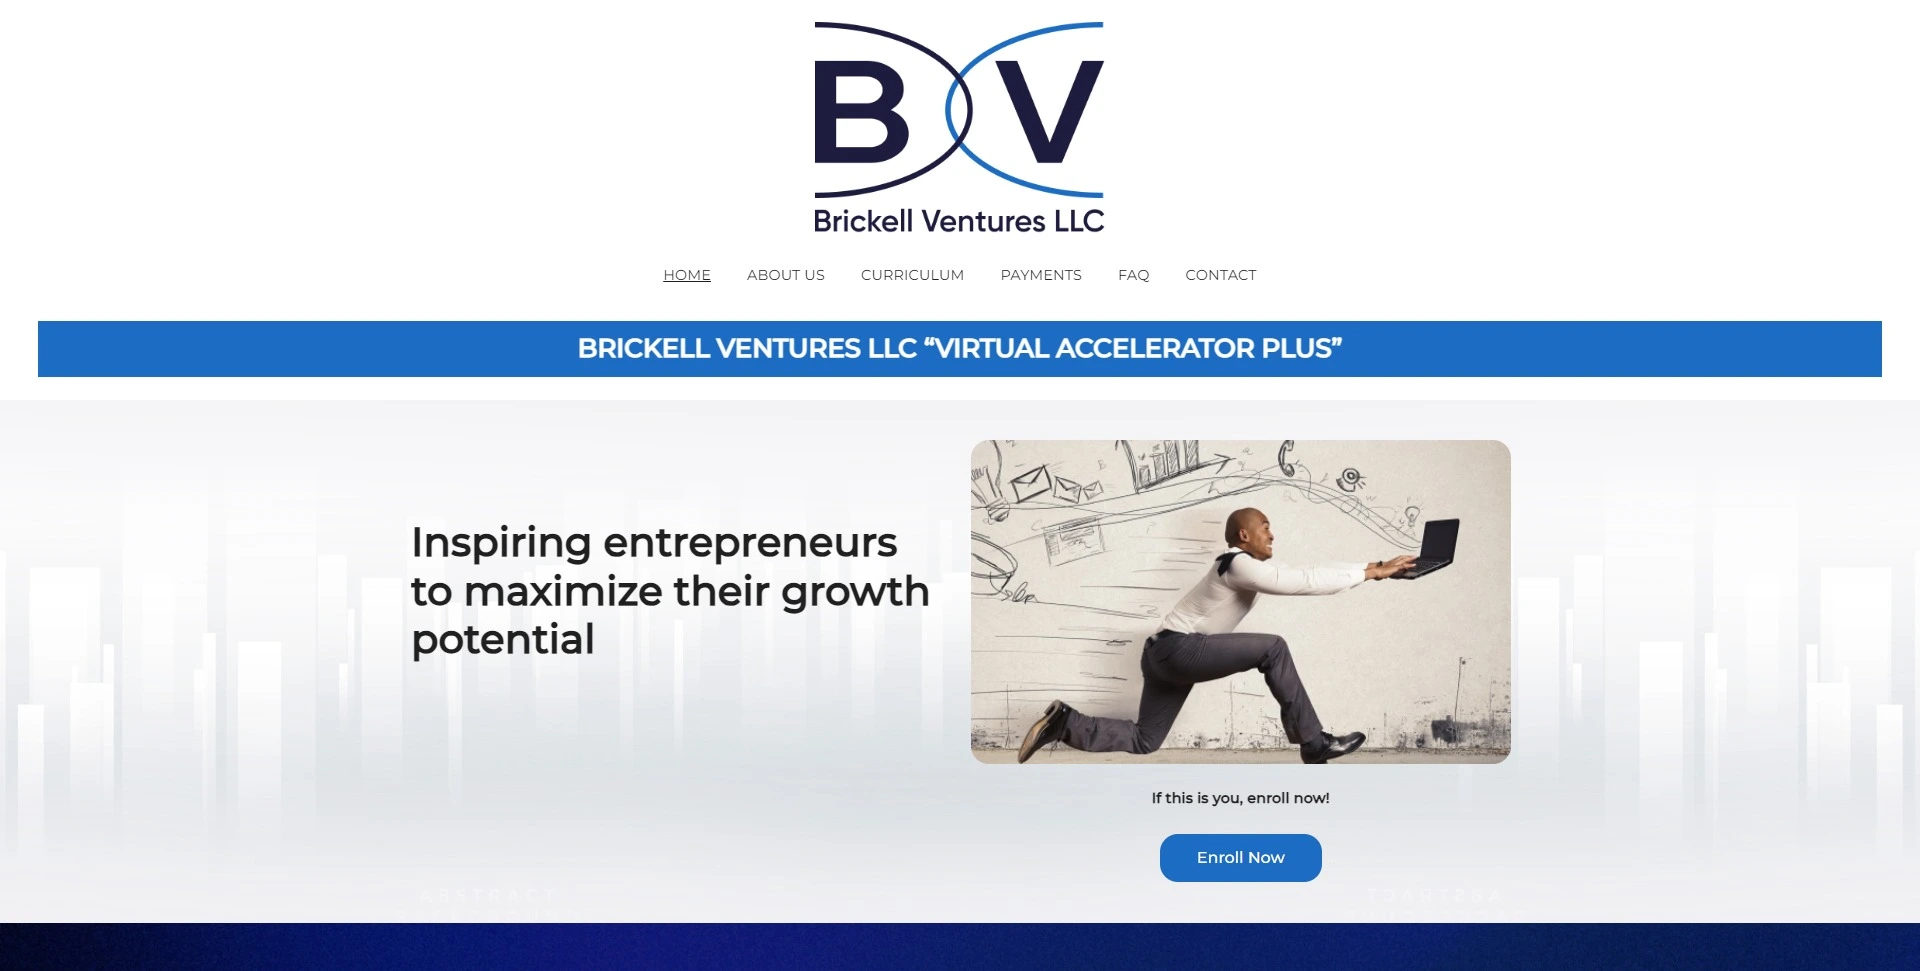 Brickell Ventures LLC